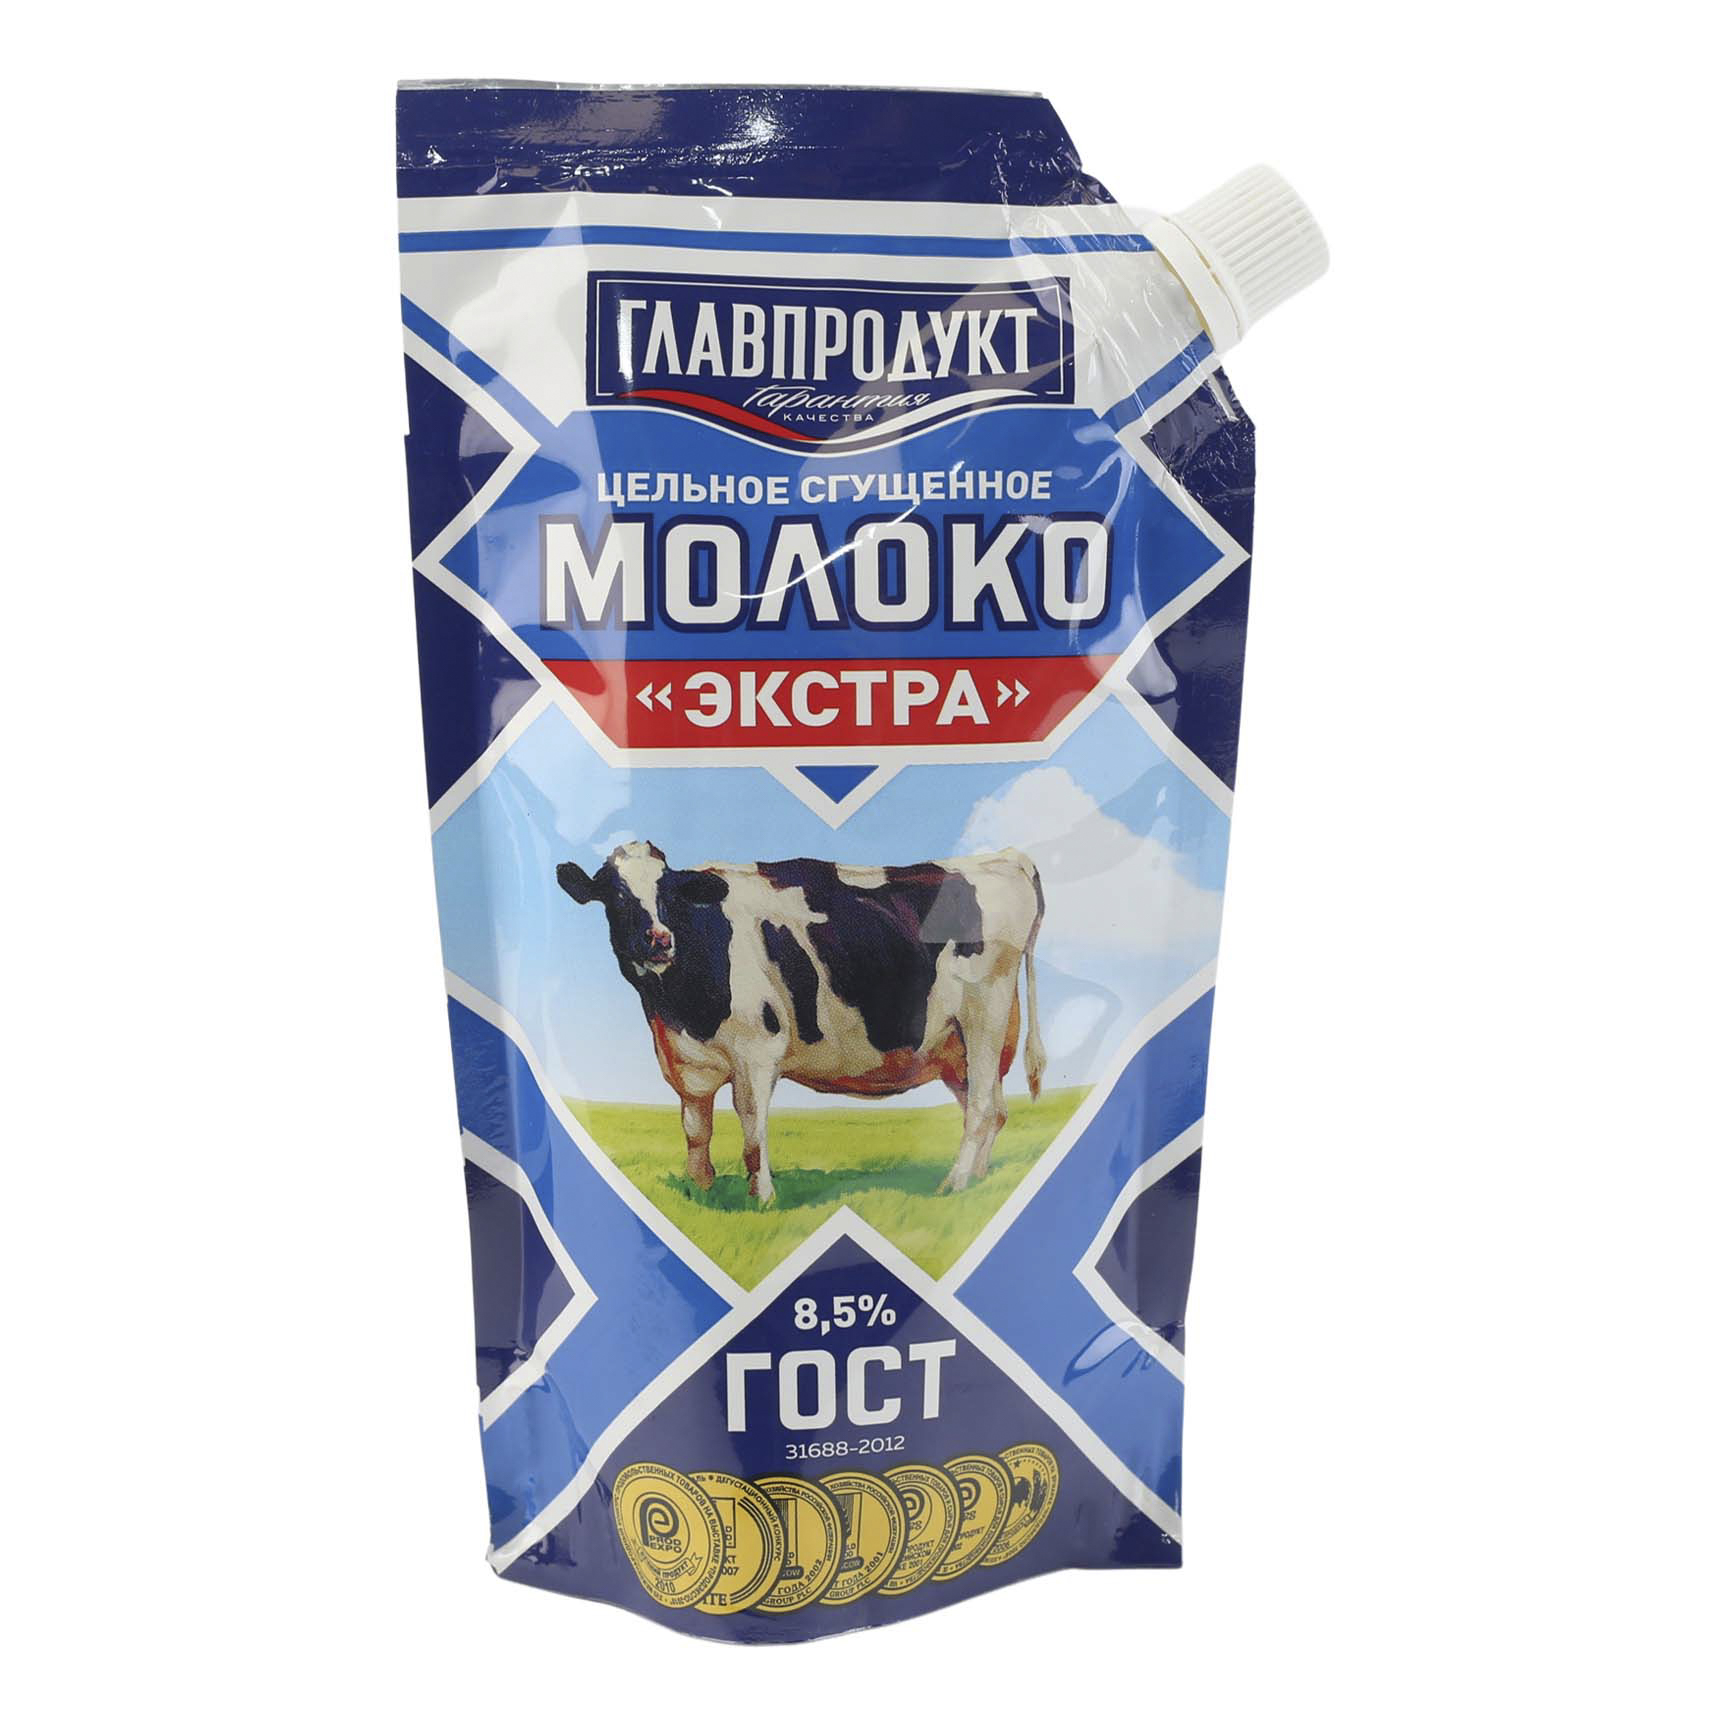 Сгущенное молоко Главпродукт Экстра цельное с сахаром 8,5% 270 г